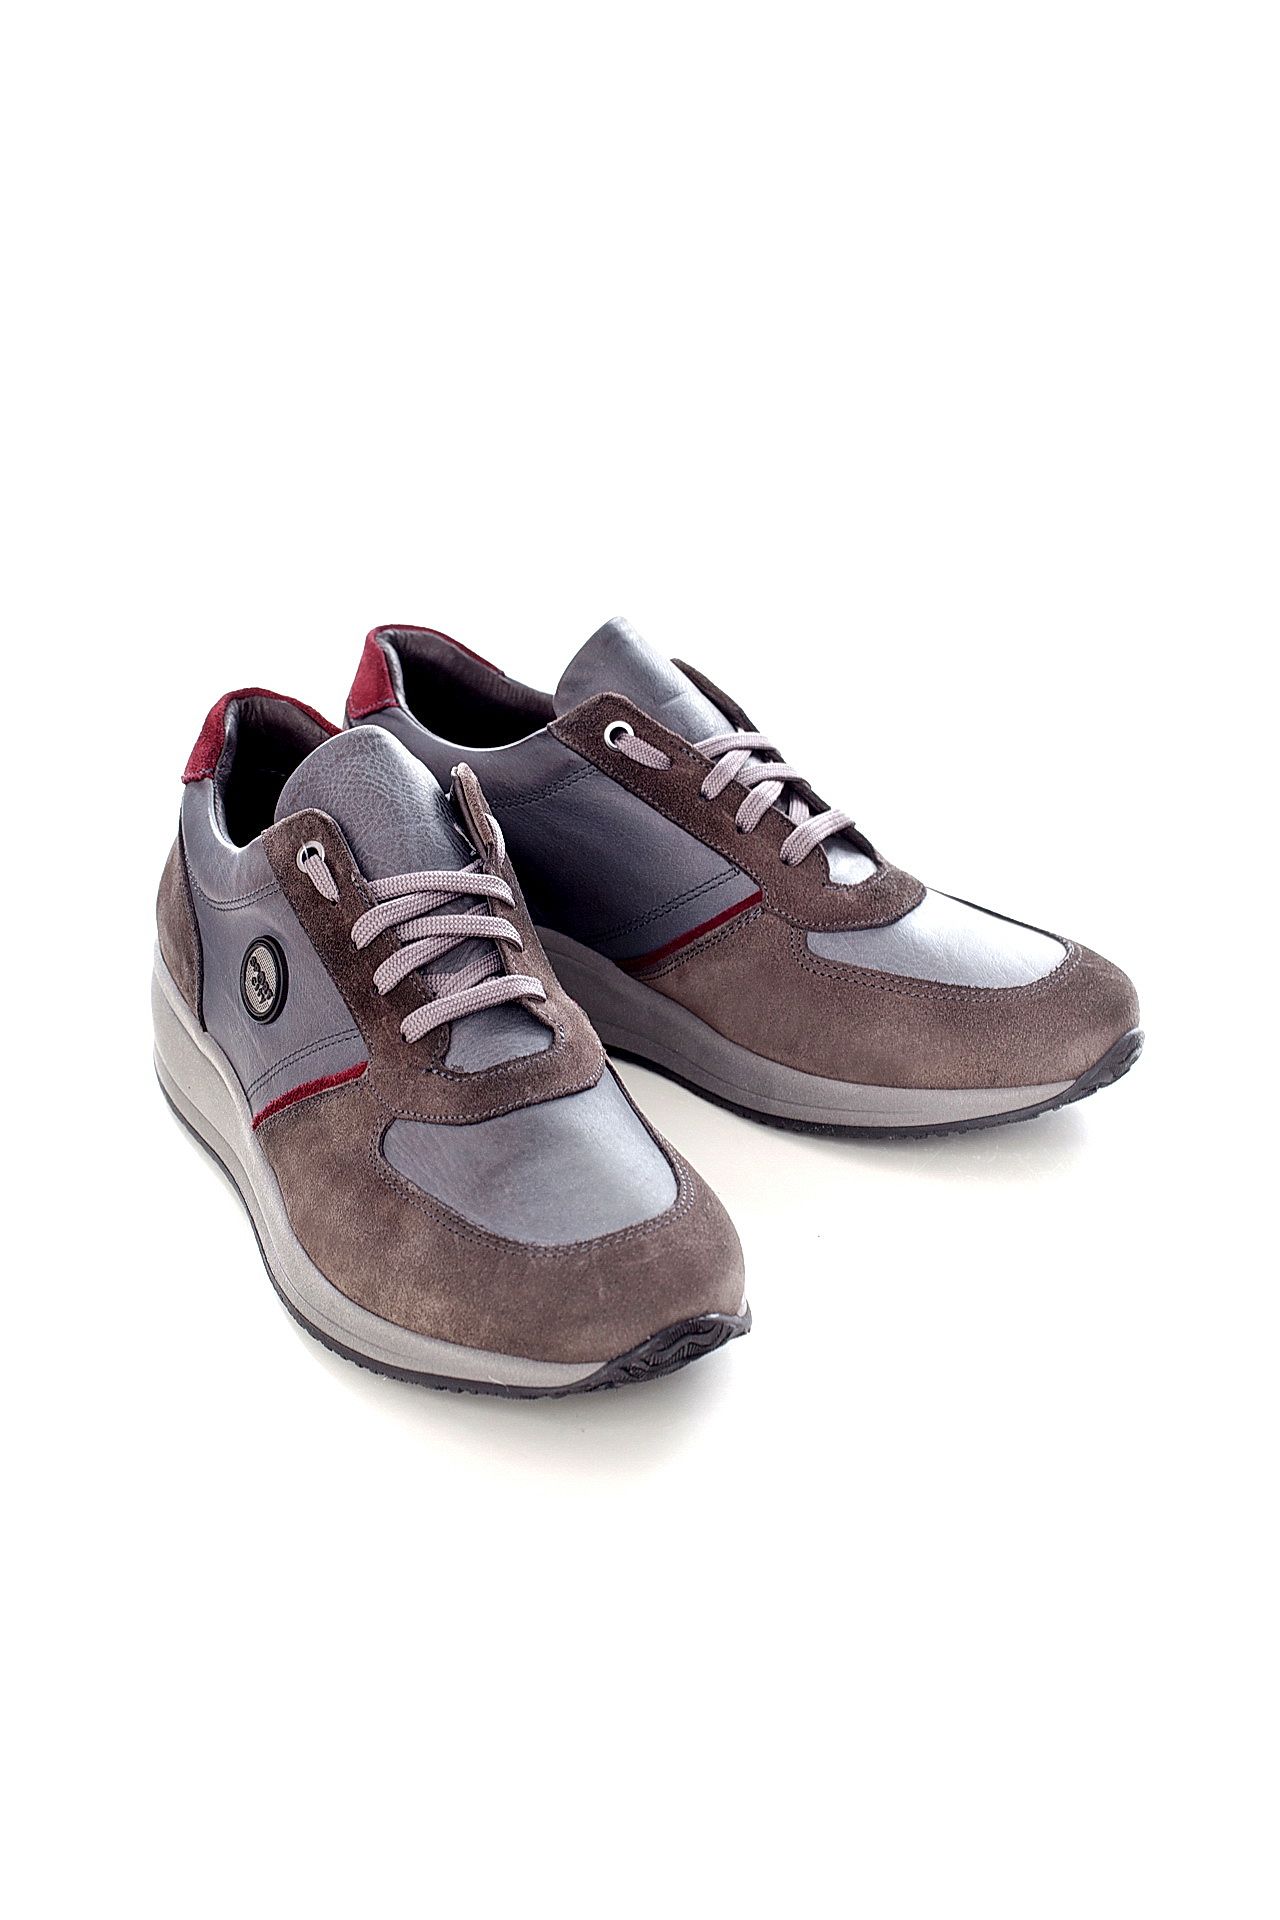 Обувь мужская Кроссовки LETICIA MILANO by Lestrosa (2030/17.2). Купить за 7630 руб.